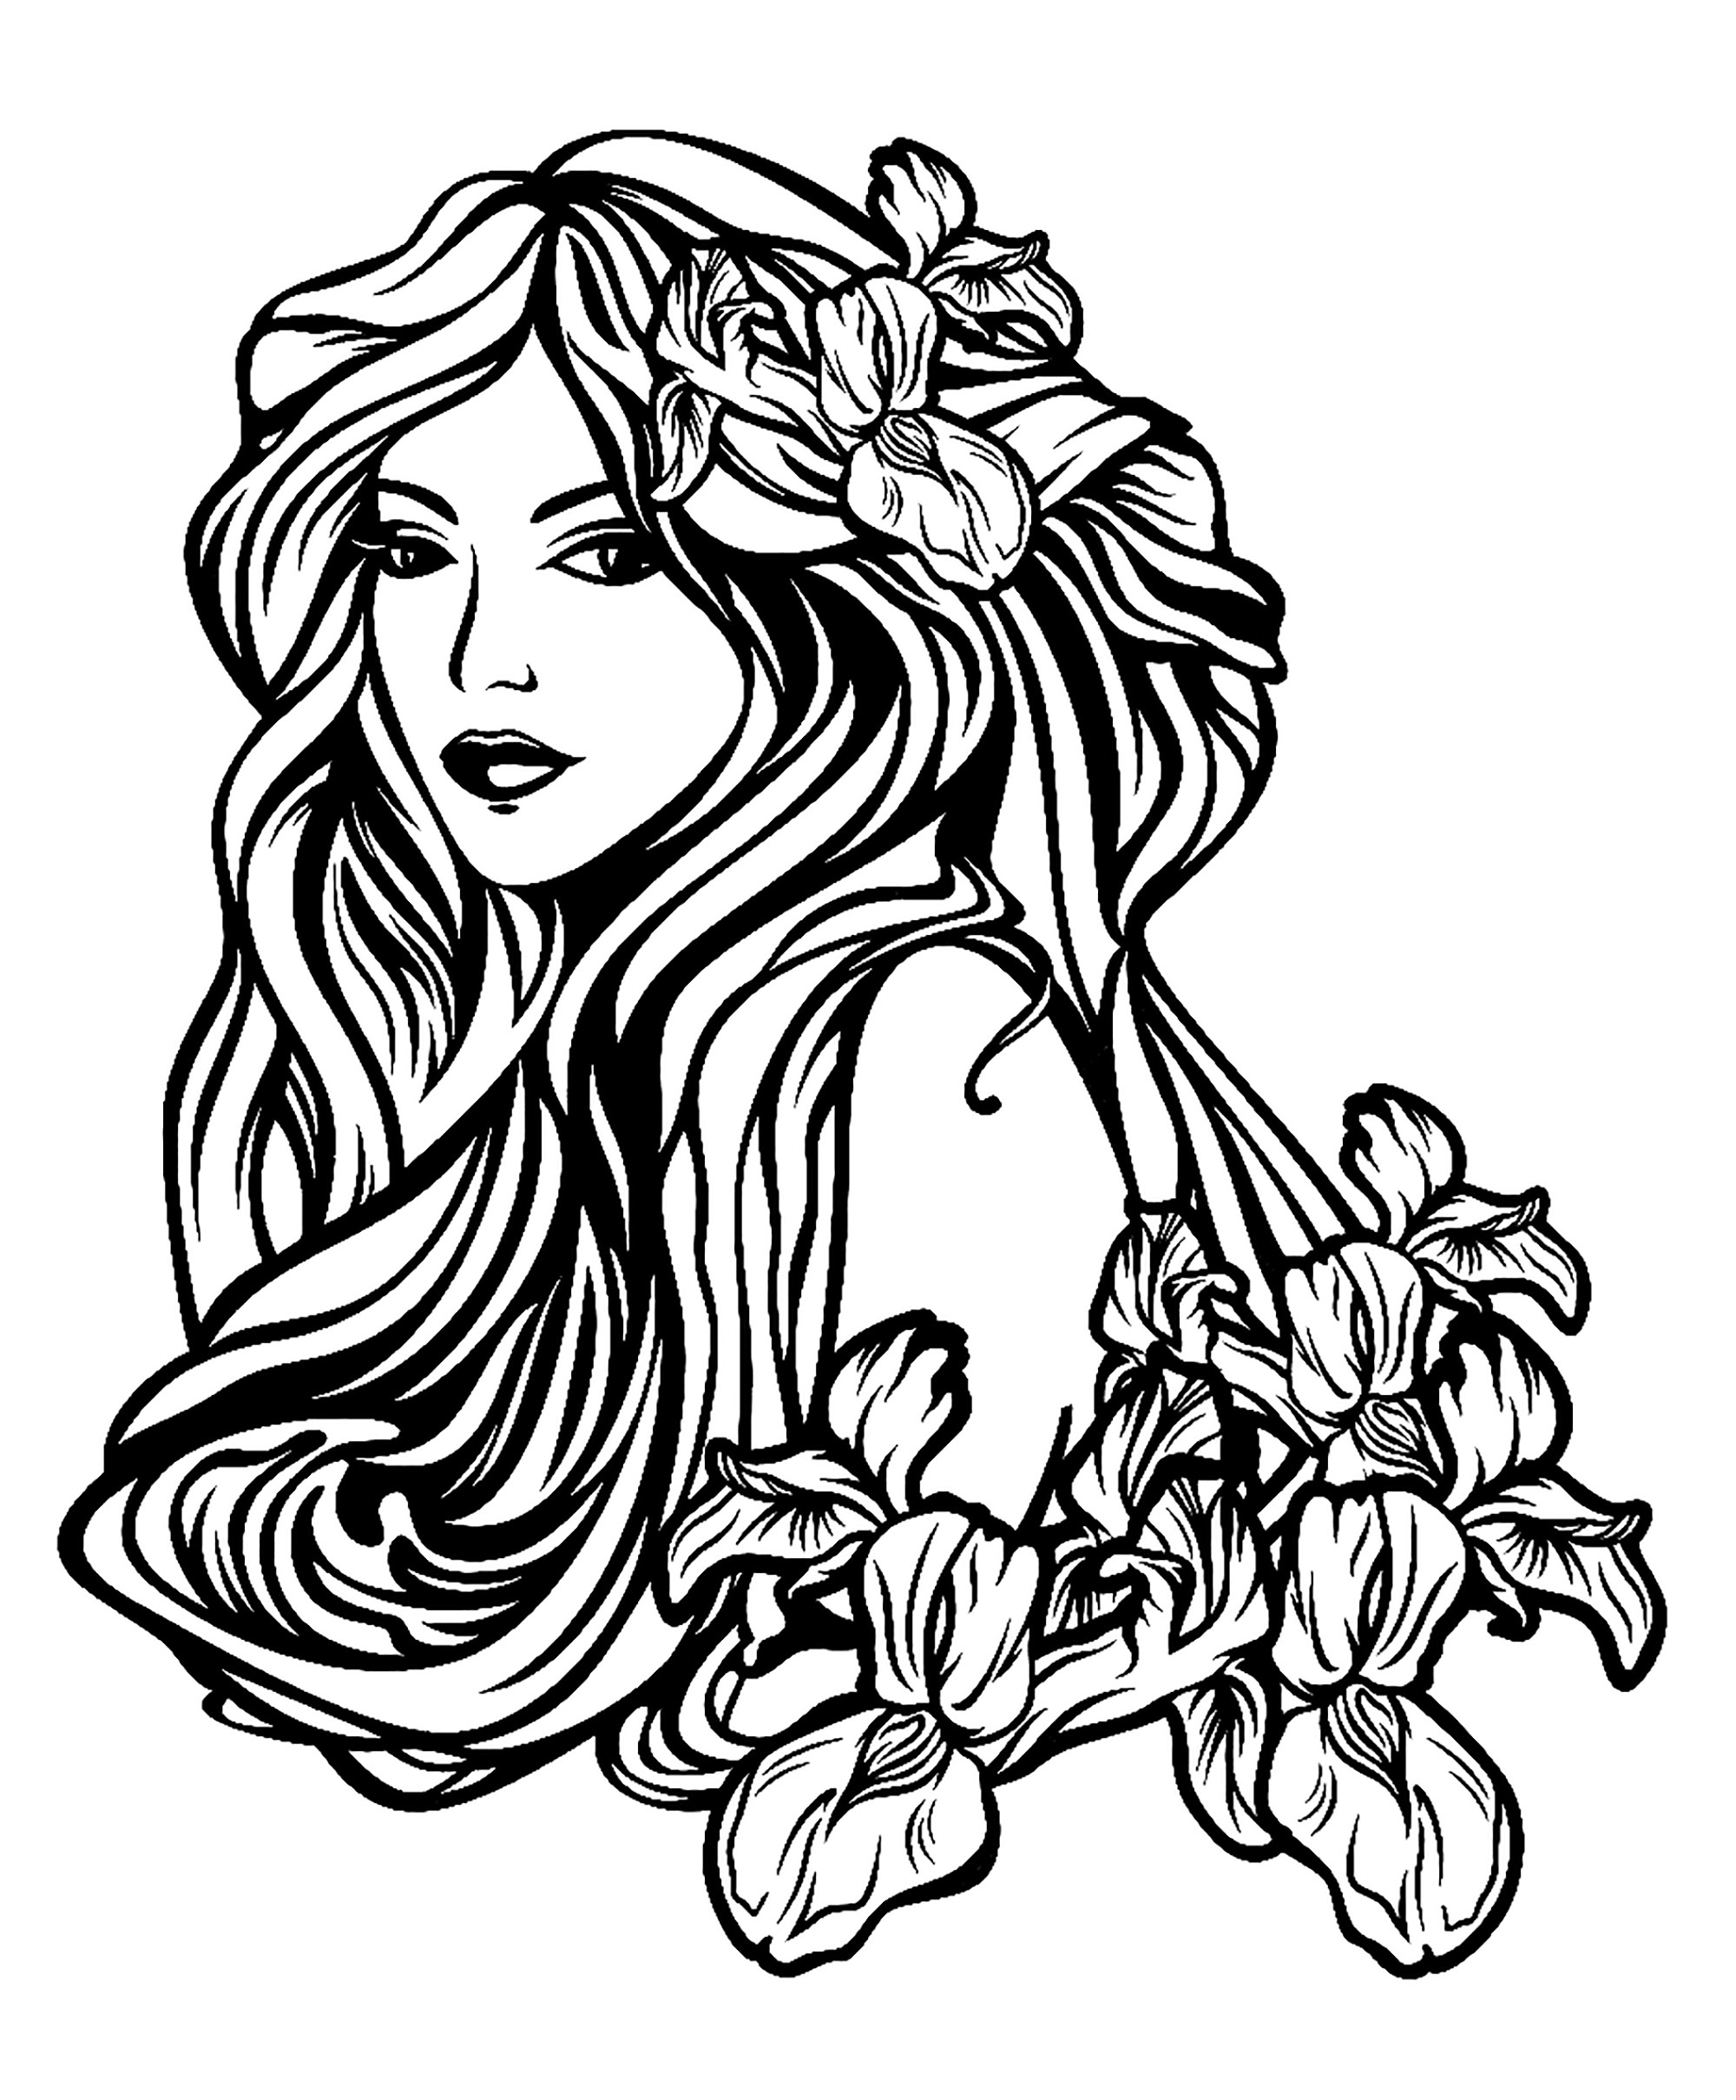 Femme aux longs cheveux, avec fleurs. Un dessin au style tatouage, Artiste : Svetlana Alyuk   Source : 123rf